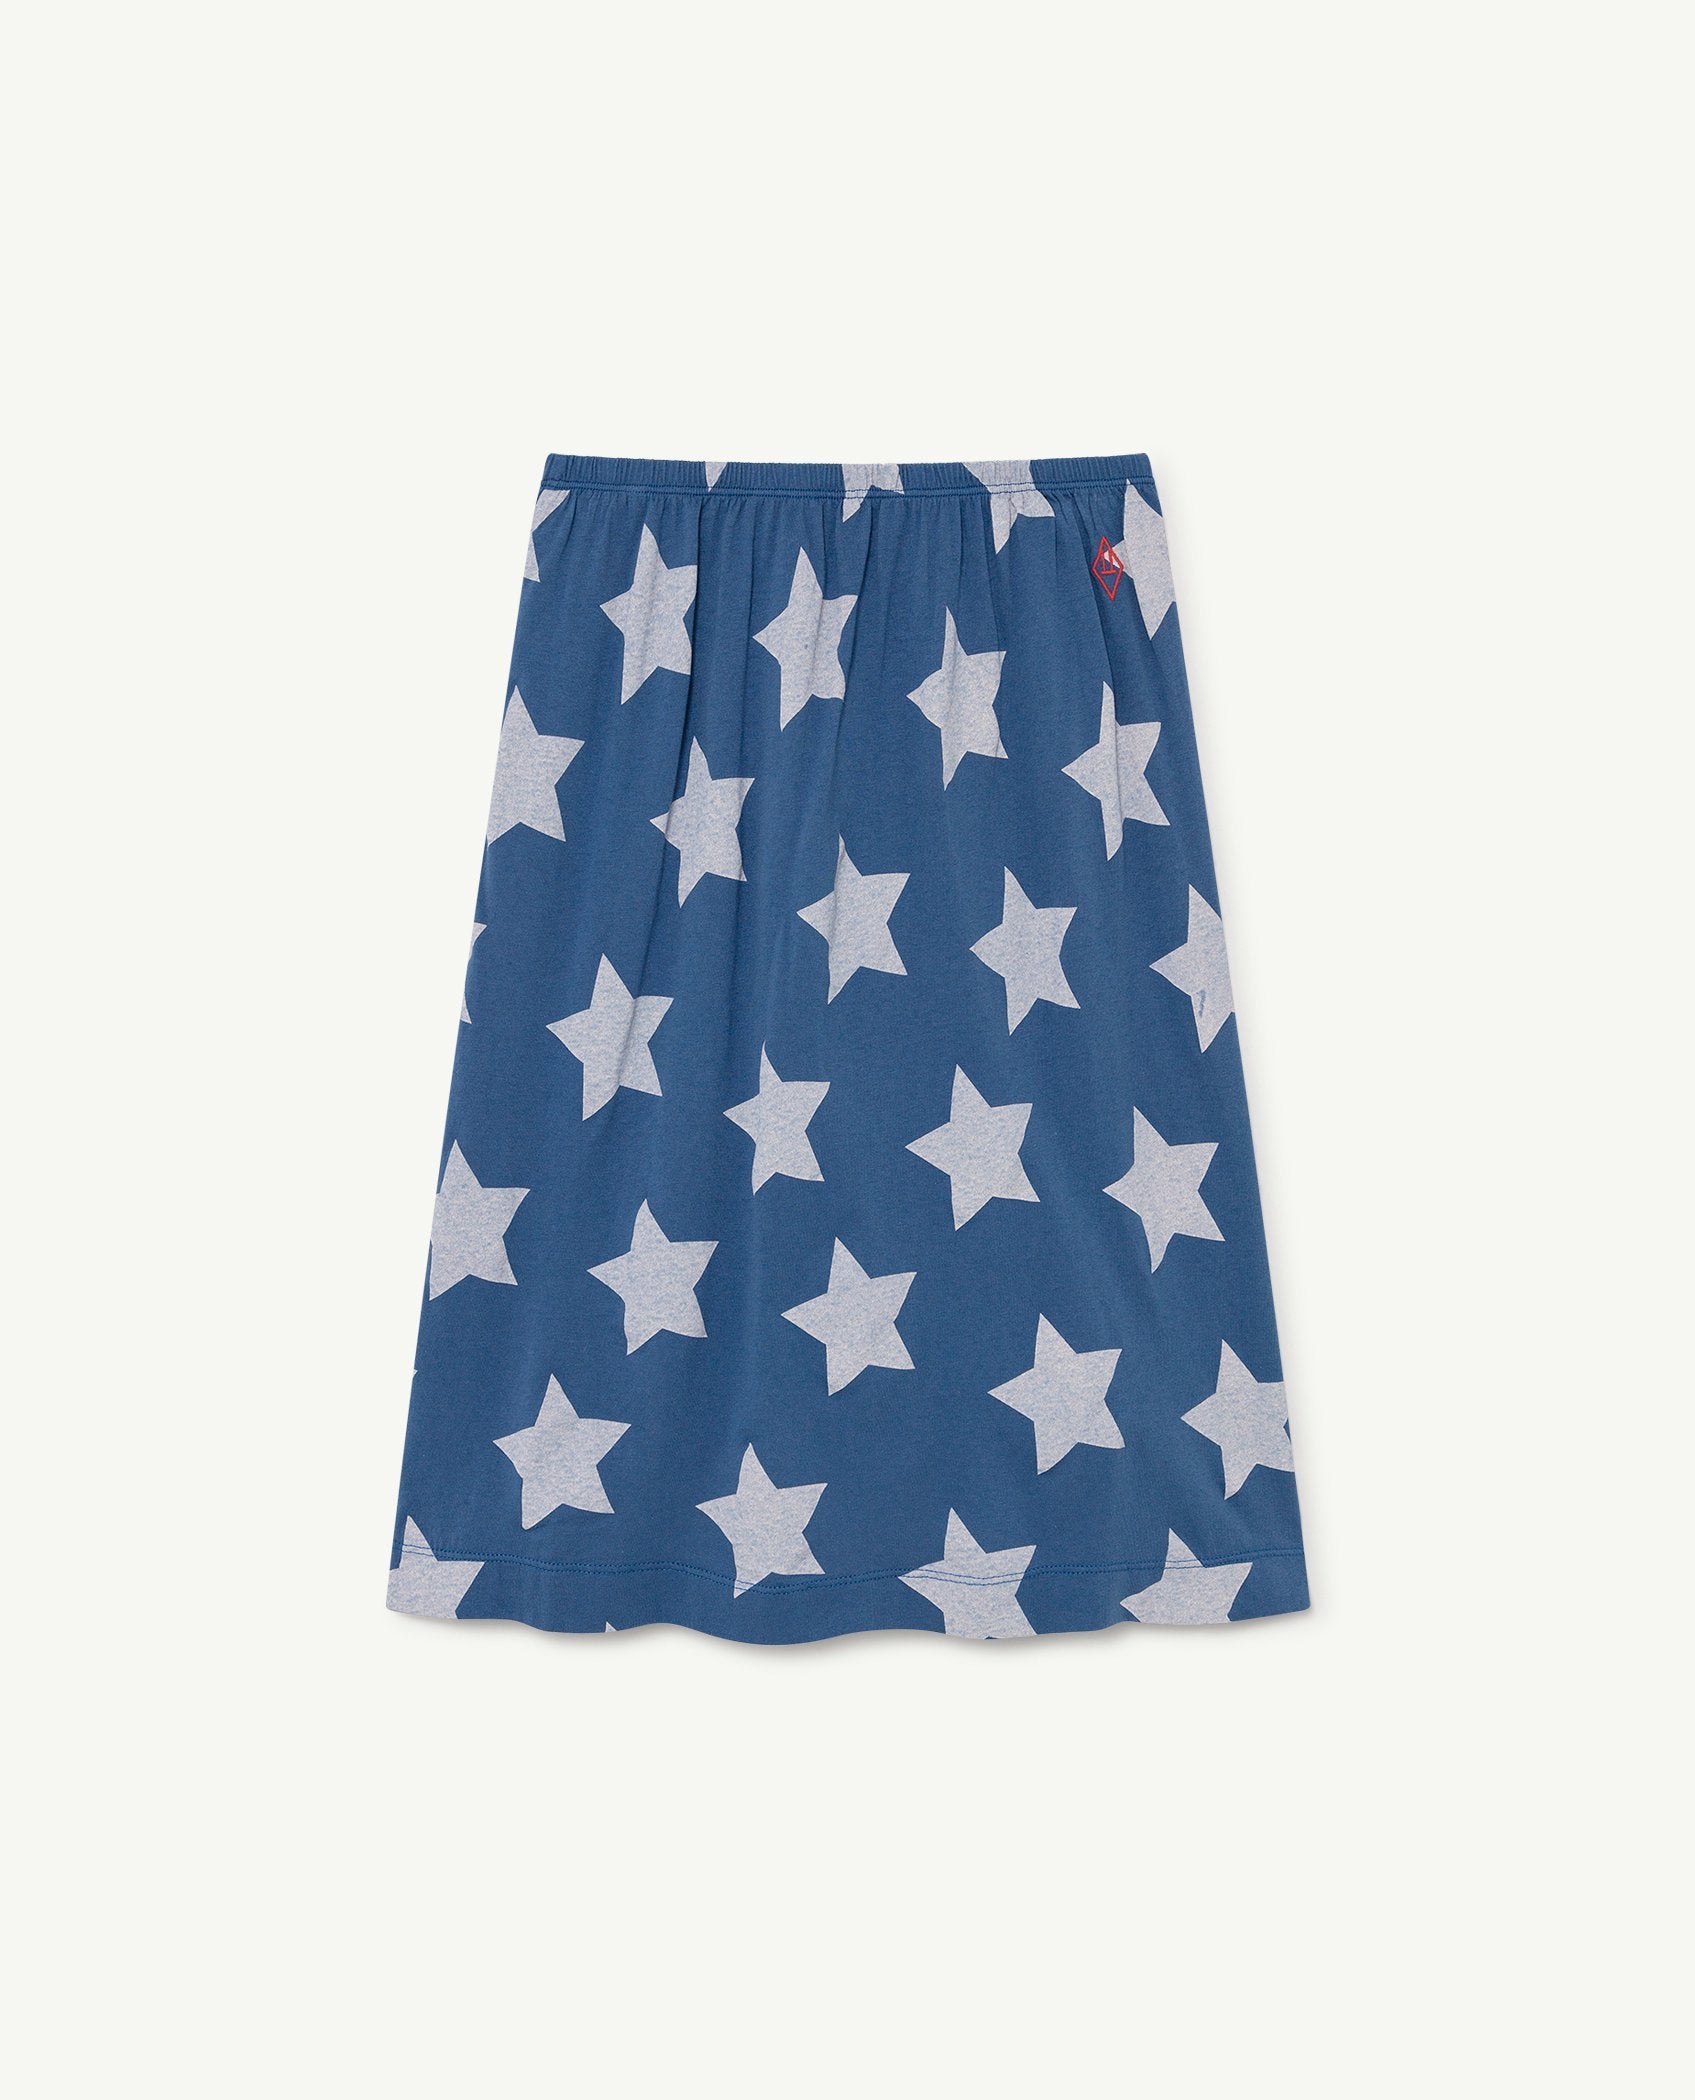 Blue Stars Ladybug Skirt PRODUCT FRONT